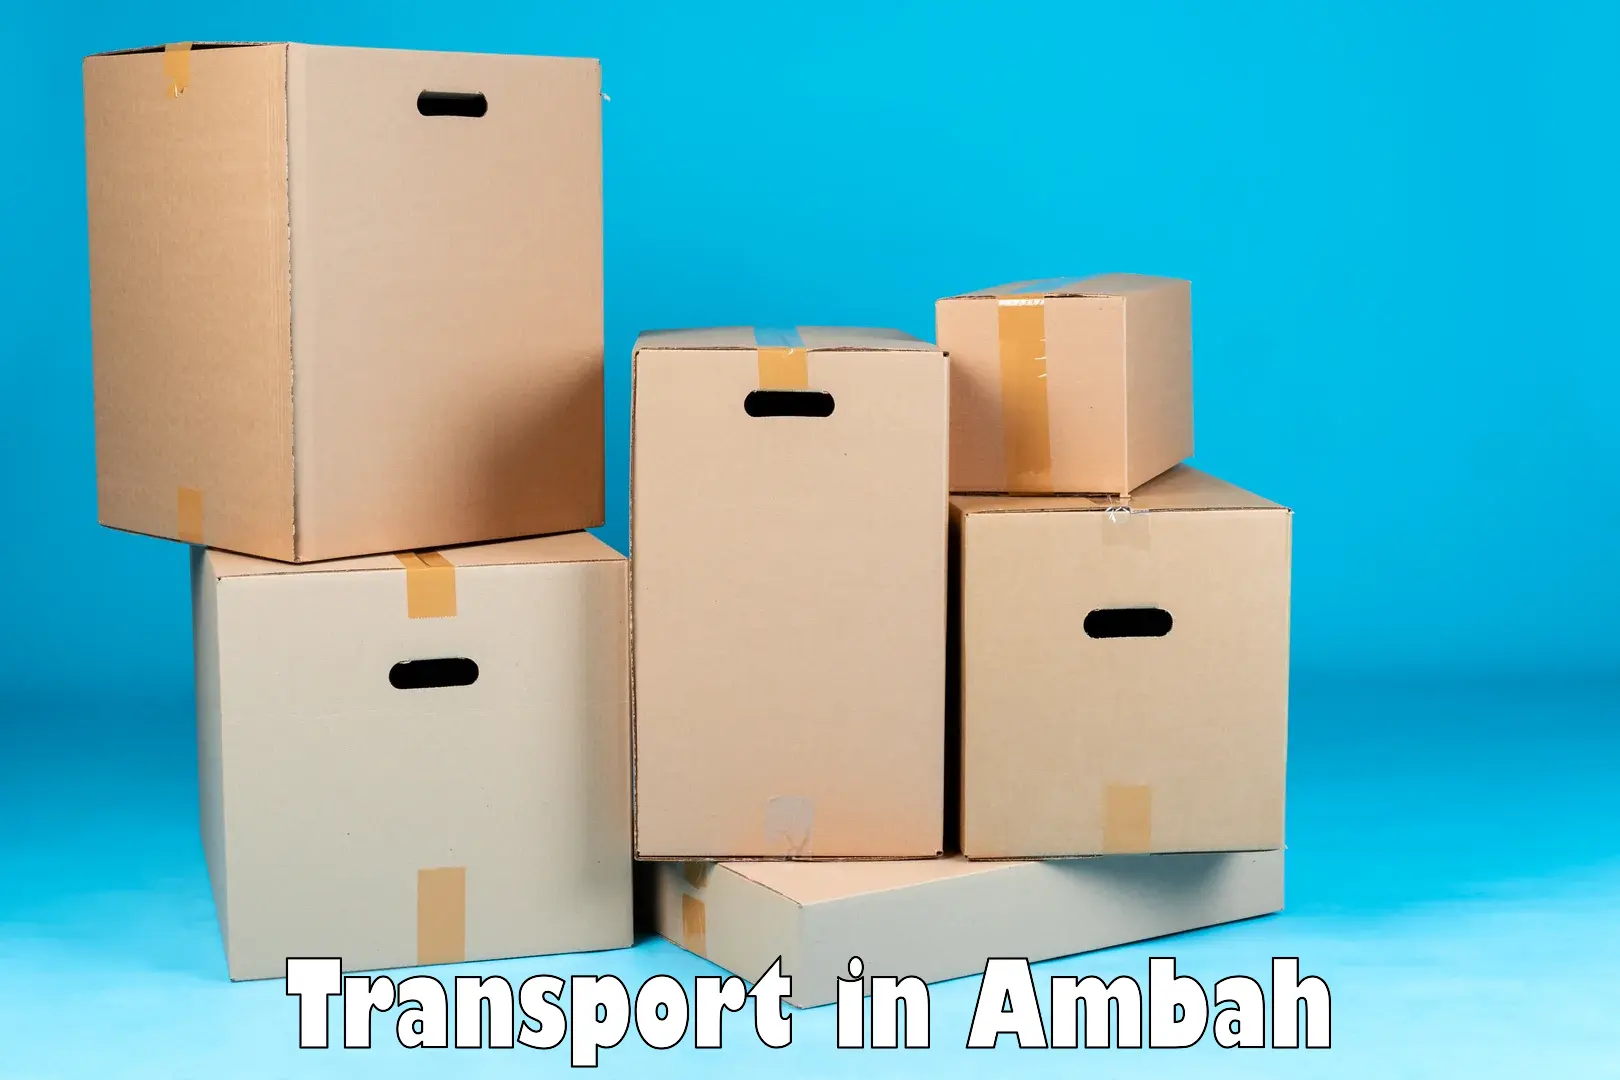 Parcel transport services in Ambah